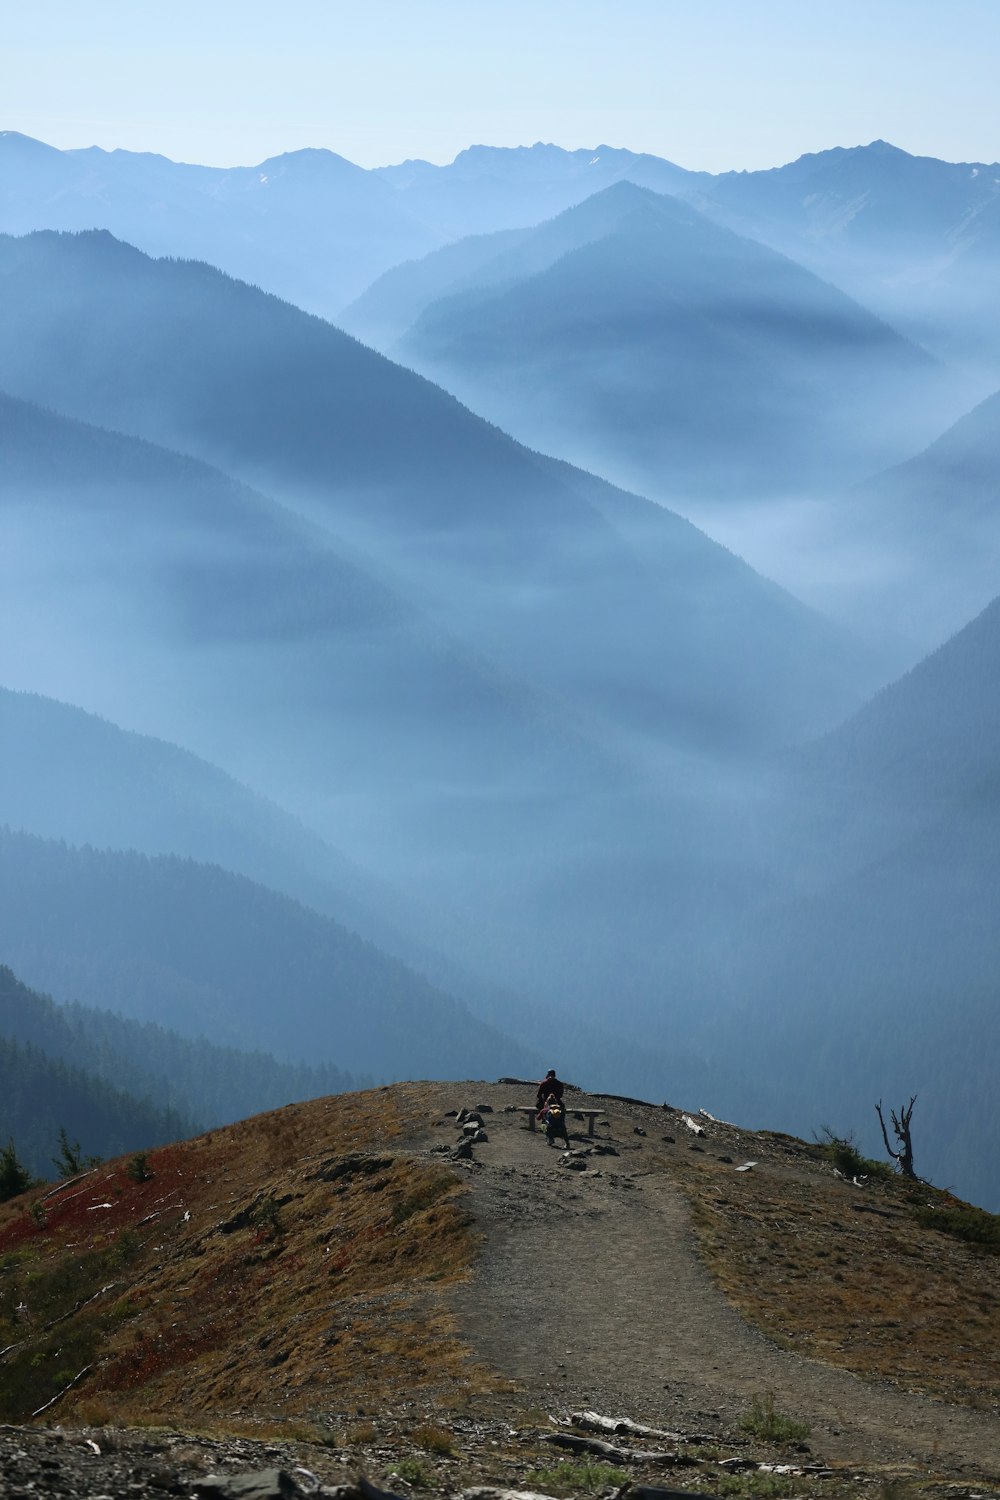 una persona in sella a una bicicletta su un sentiero in montagna